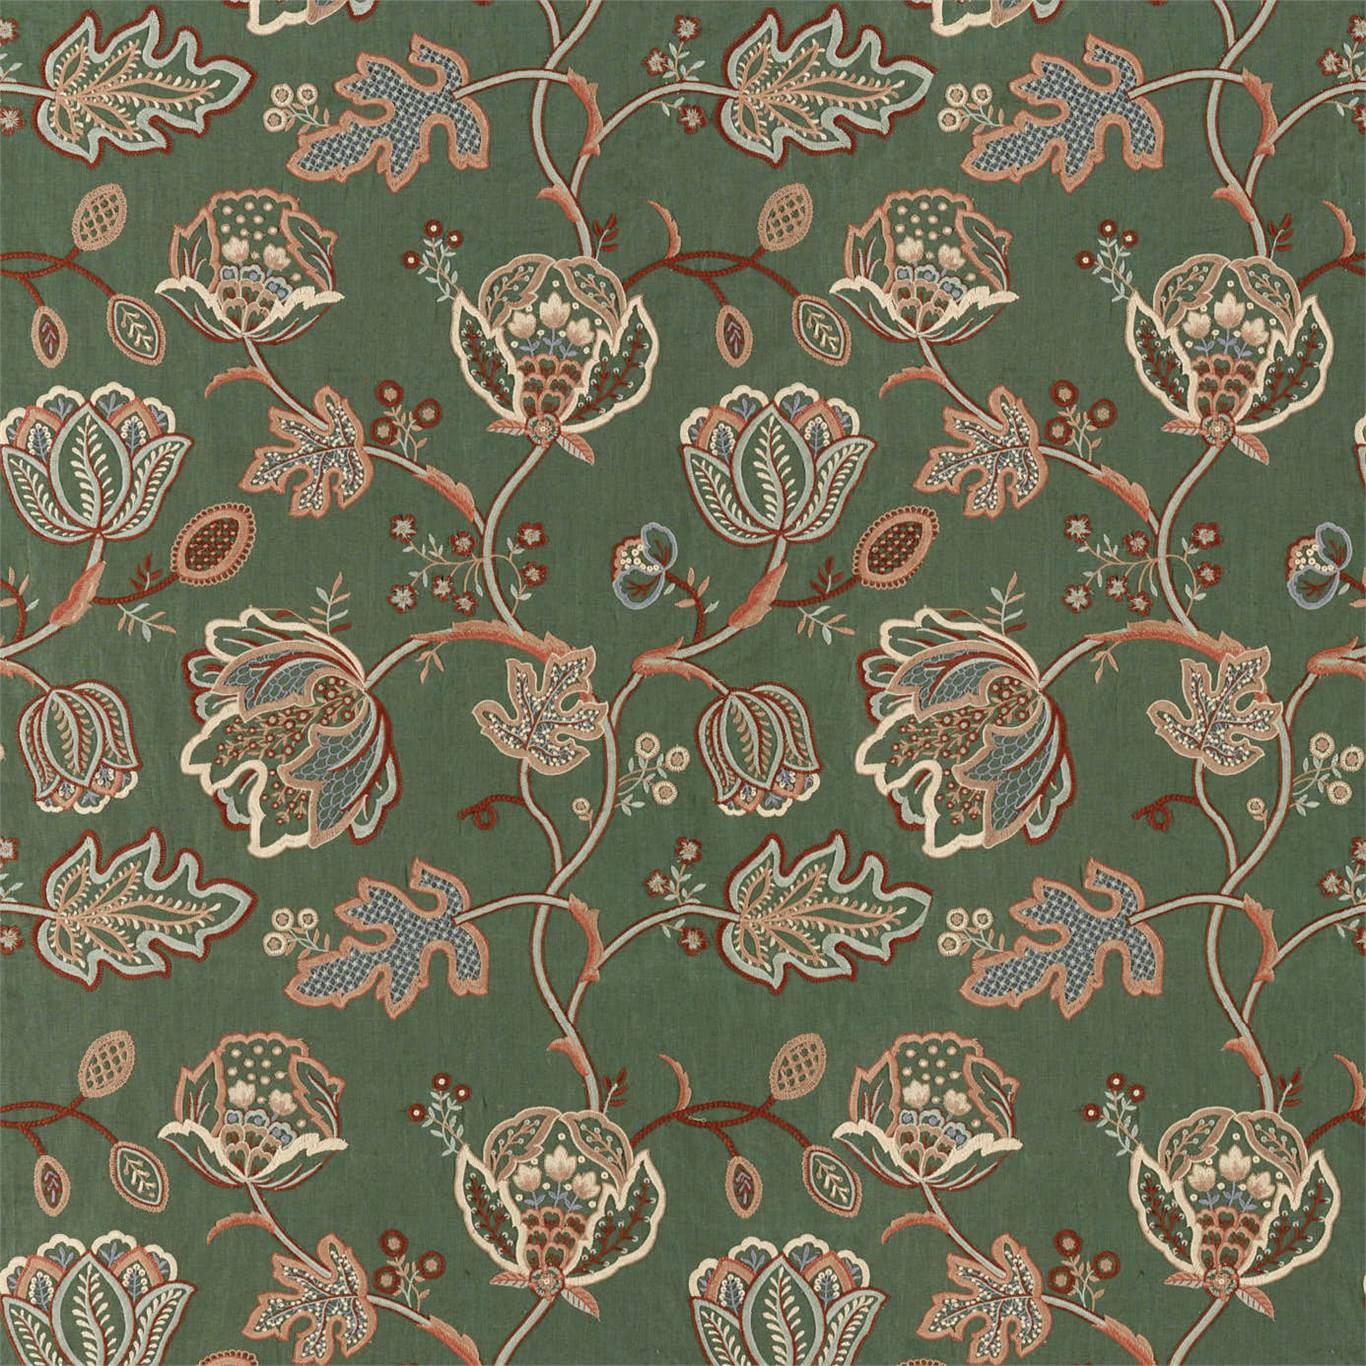 Ткани Morris & Co | Купить ткань Theodosia embroidery от Morris & Co из  новой коллекции 2019 года на сайте официального дистрибьютора GLUTS